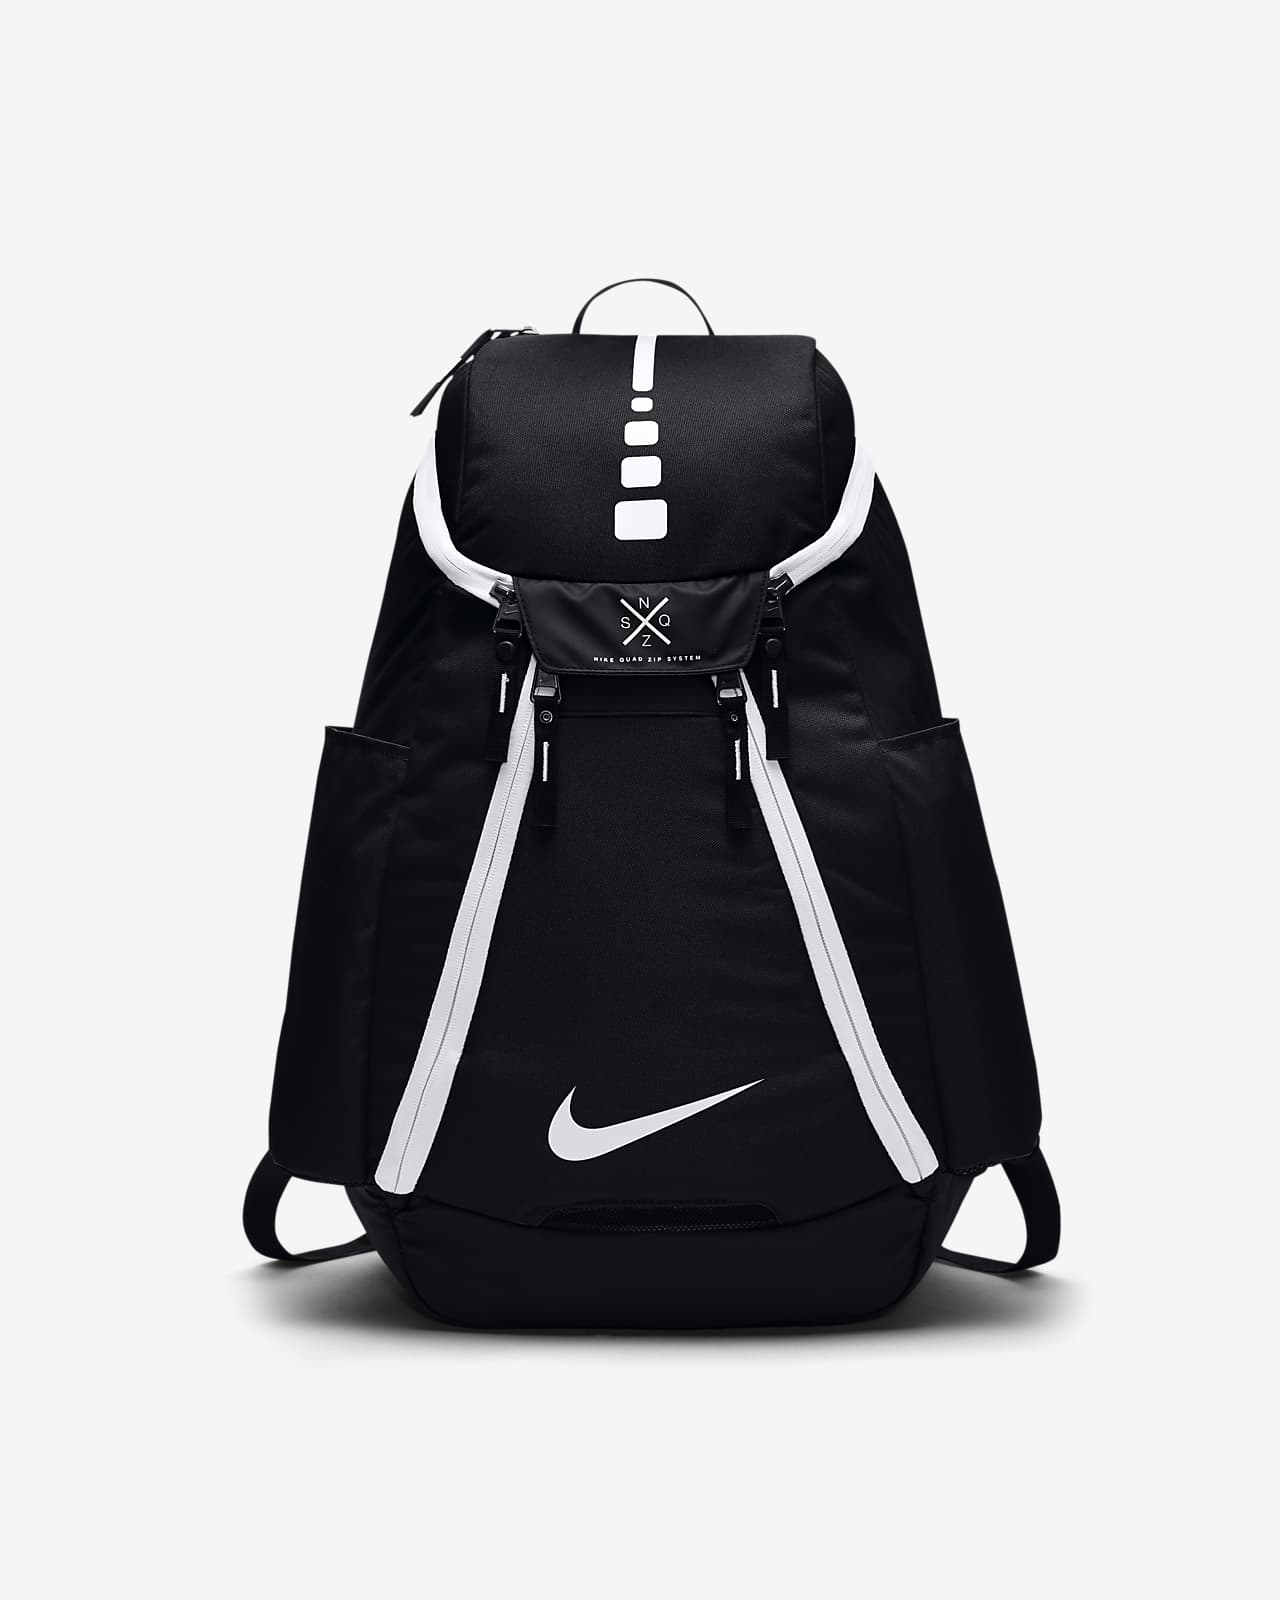 nike elite backpack 2.0